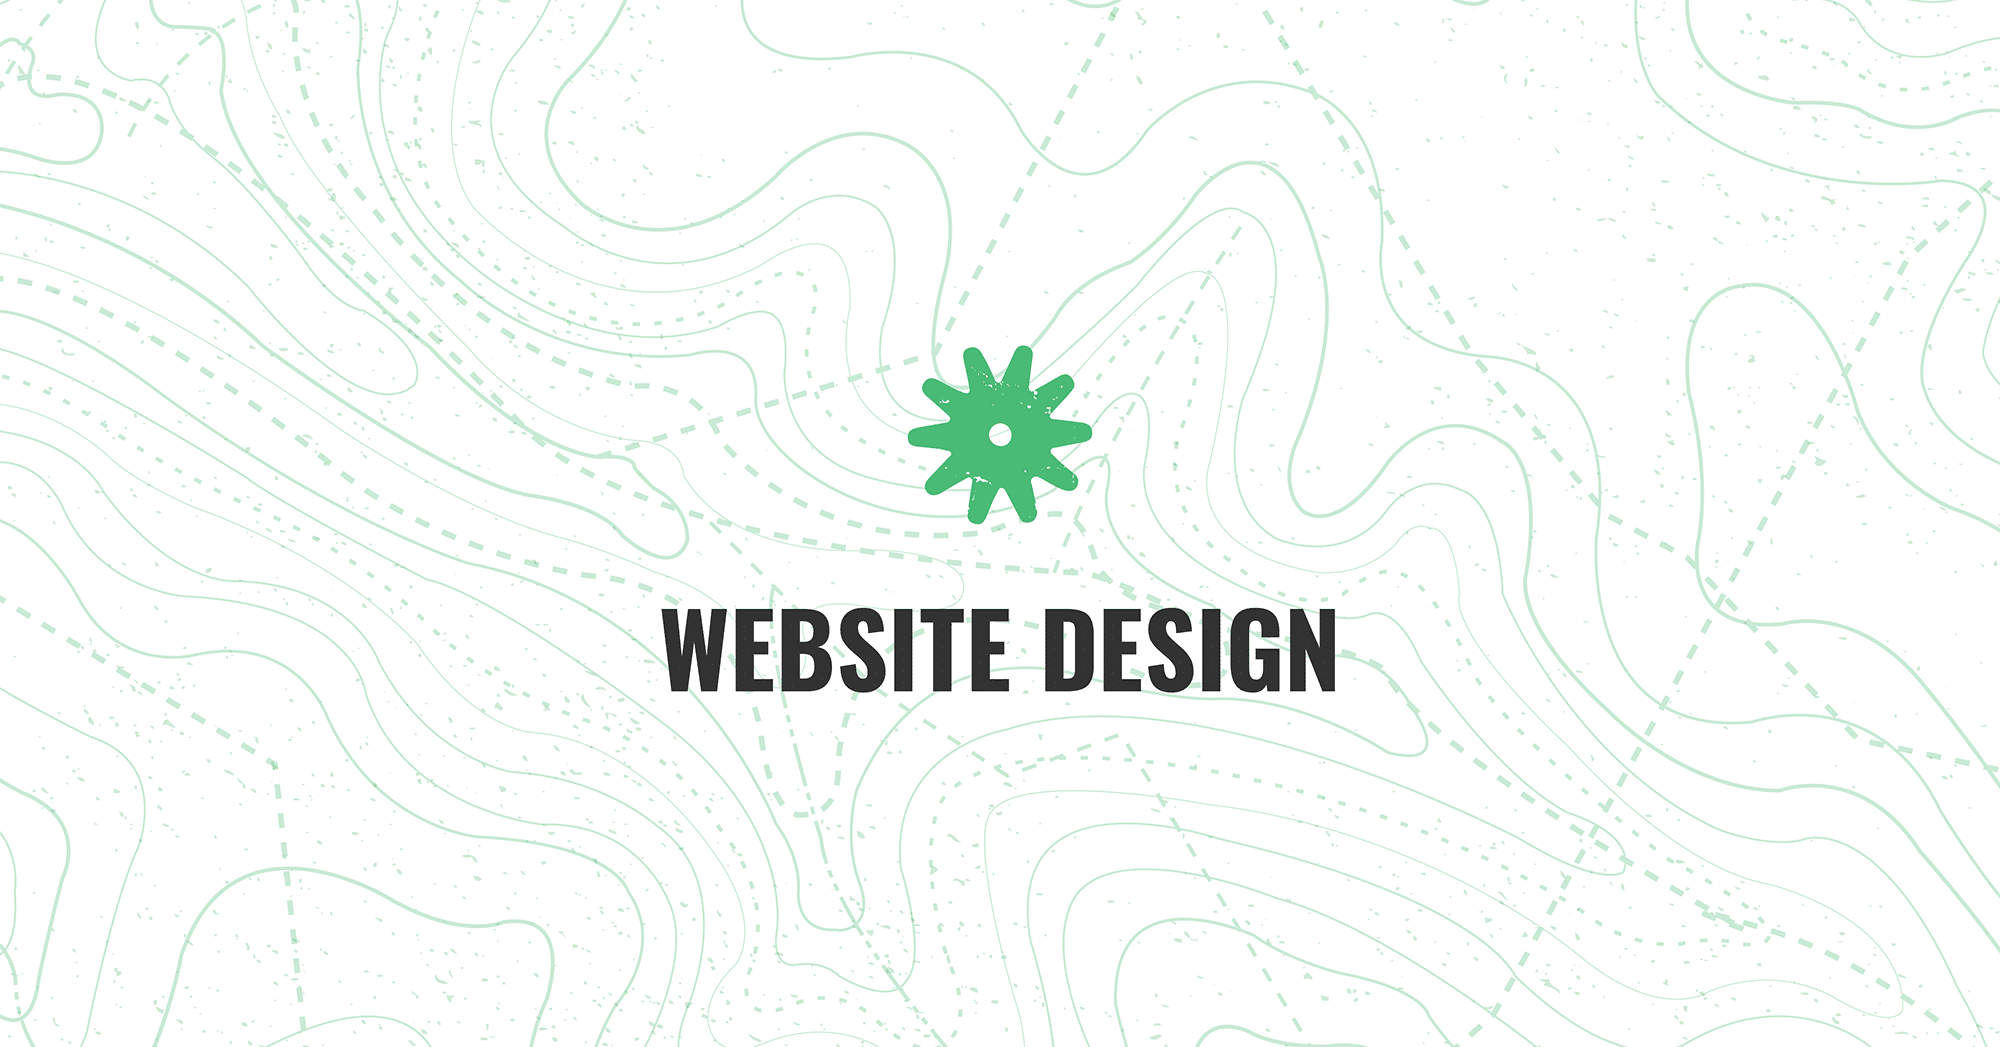 Website Design Services, WordPress Design & Development